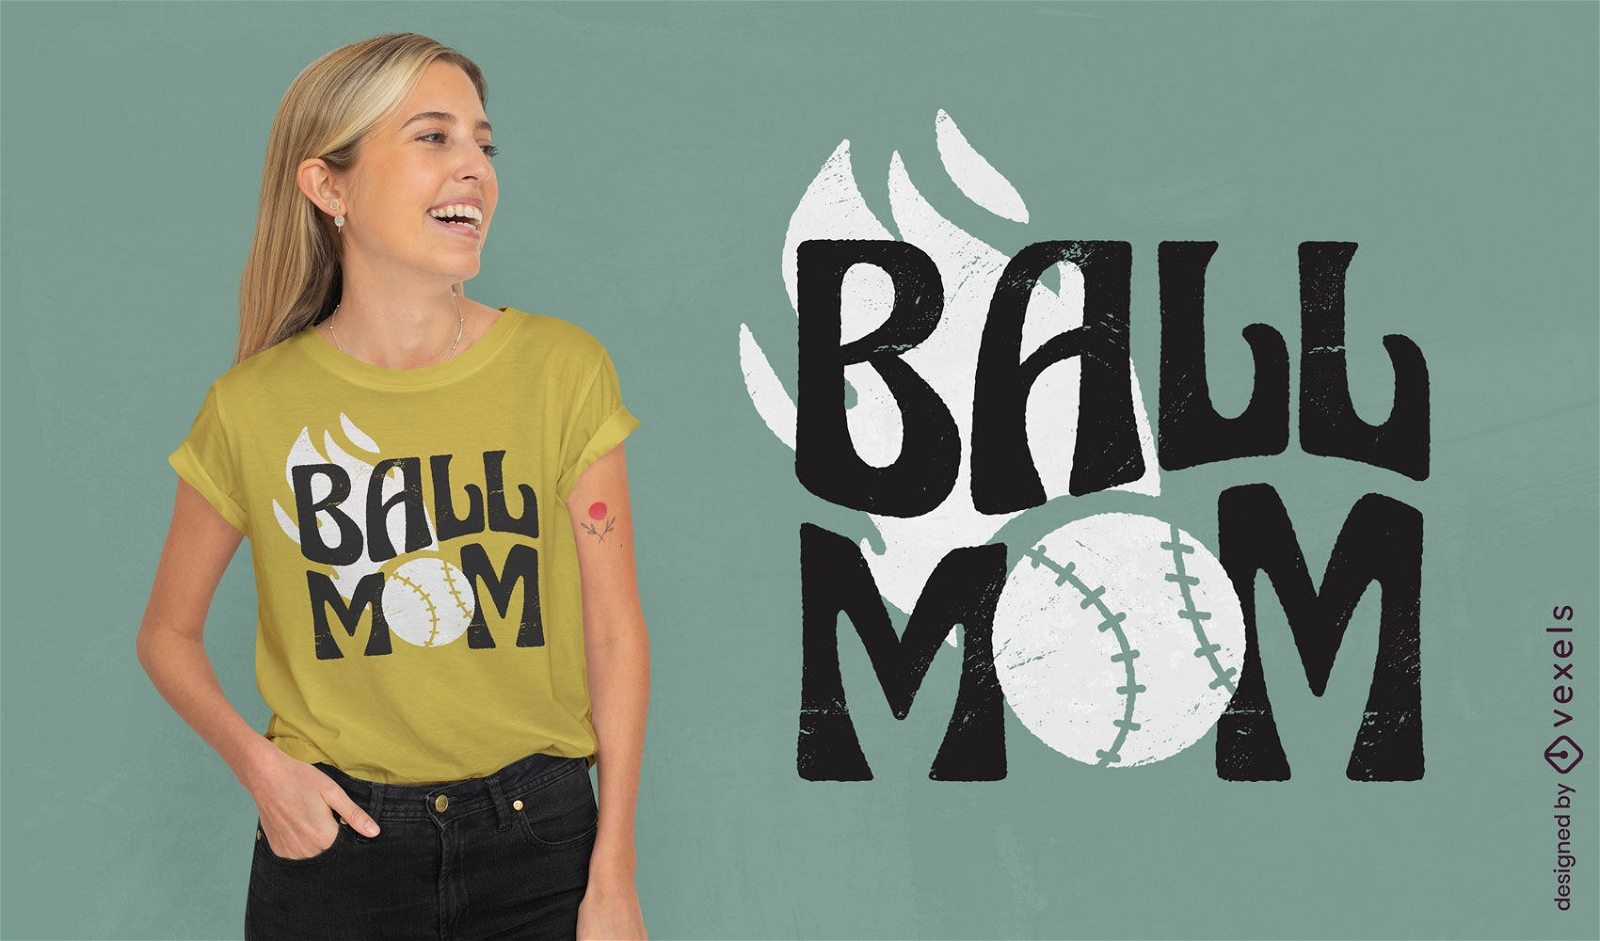 Baseball mom t-shirt design